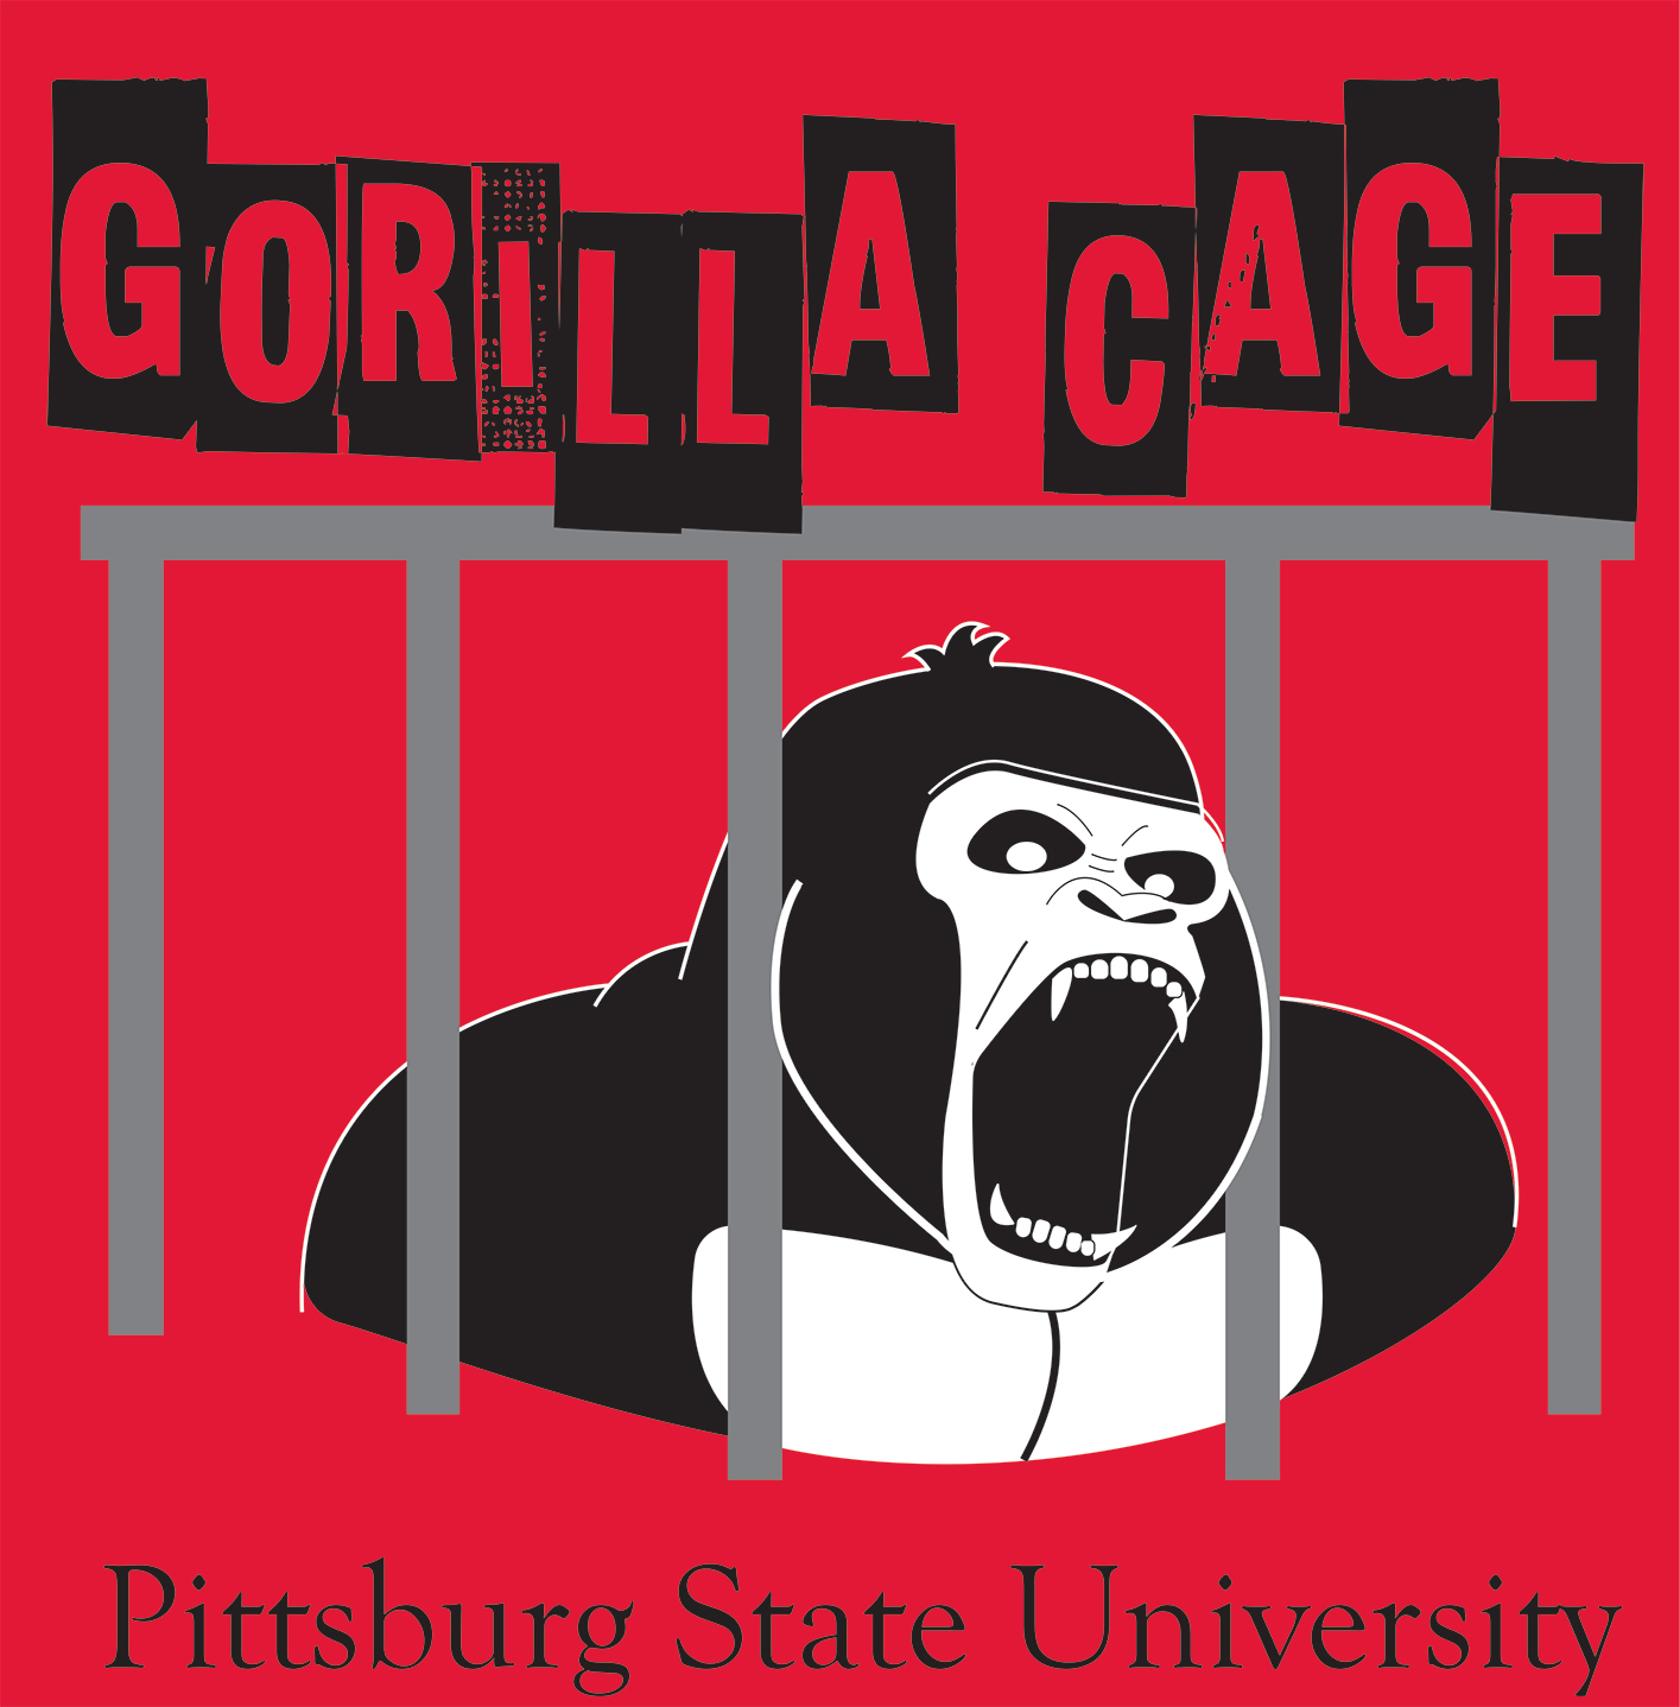 Gorilla Cage